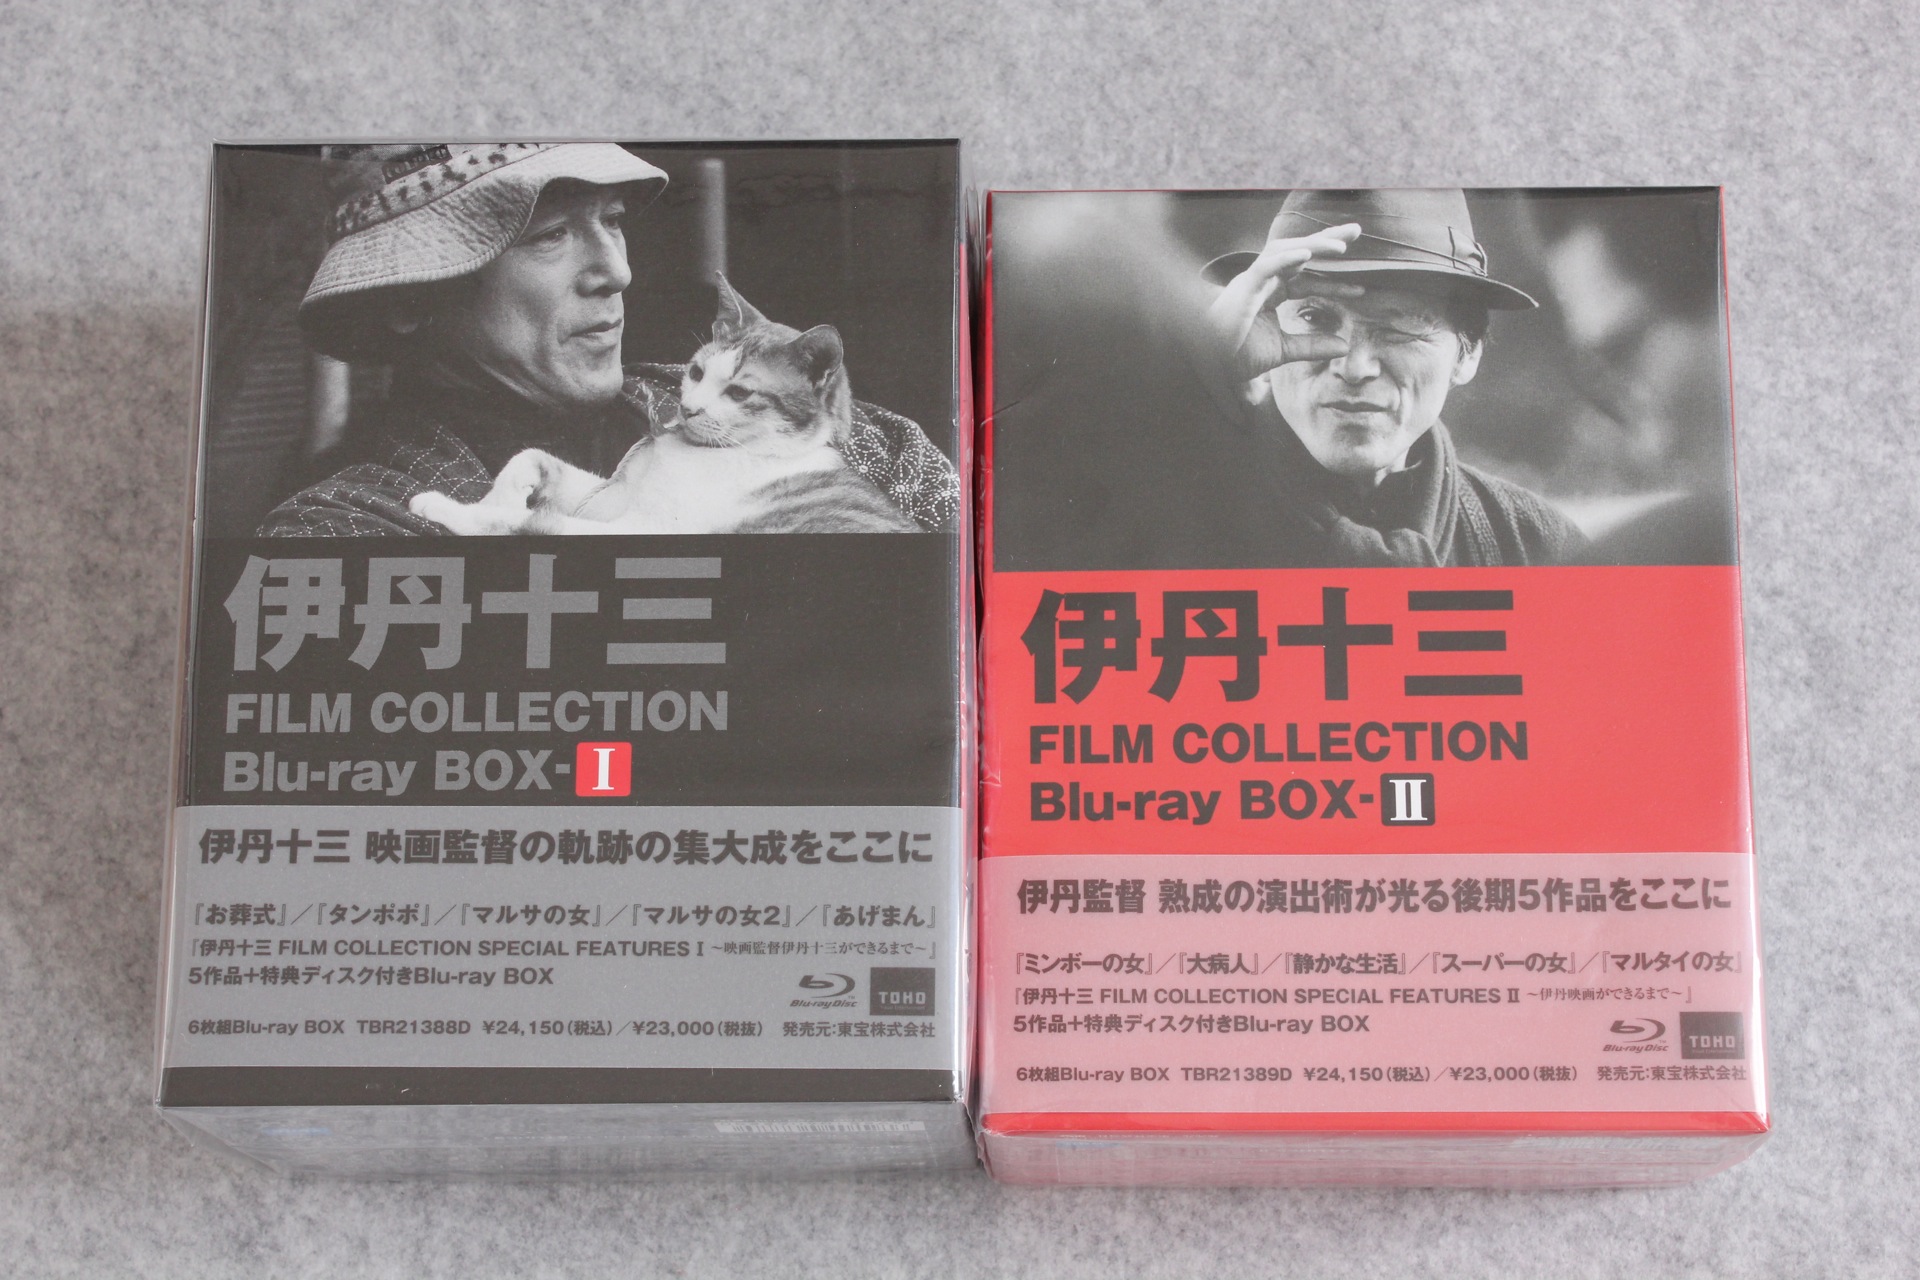 伊丹十三 FILM COLLECTION Blu-ray BOX Ⅰ Ⅱ セット-connectedremag.com